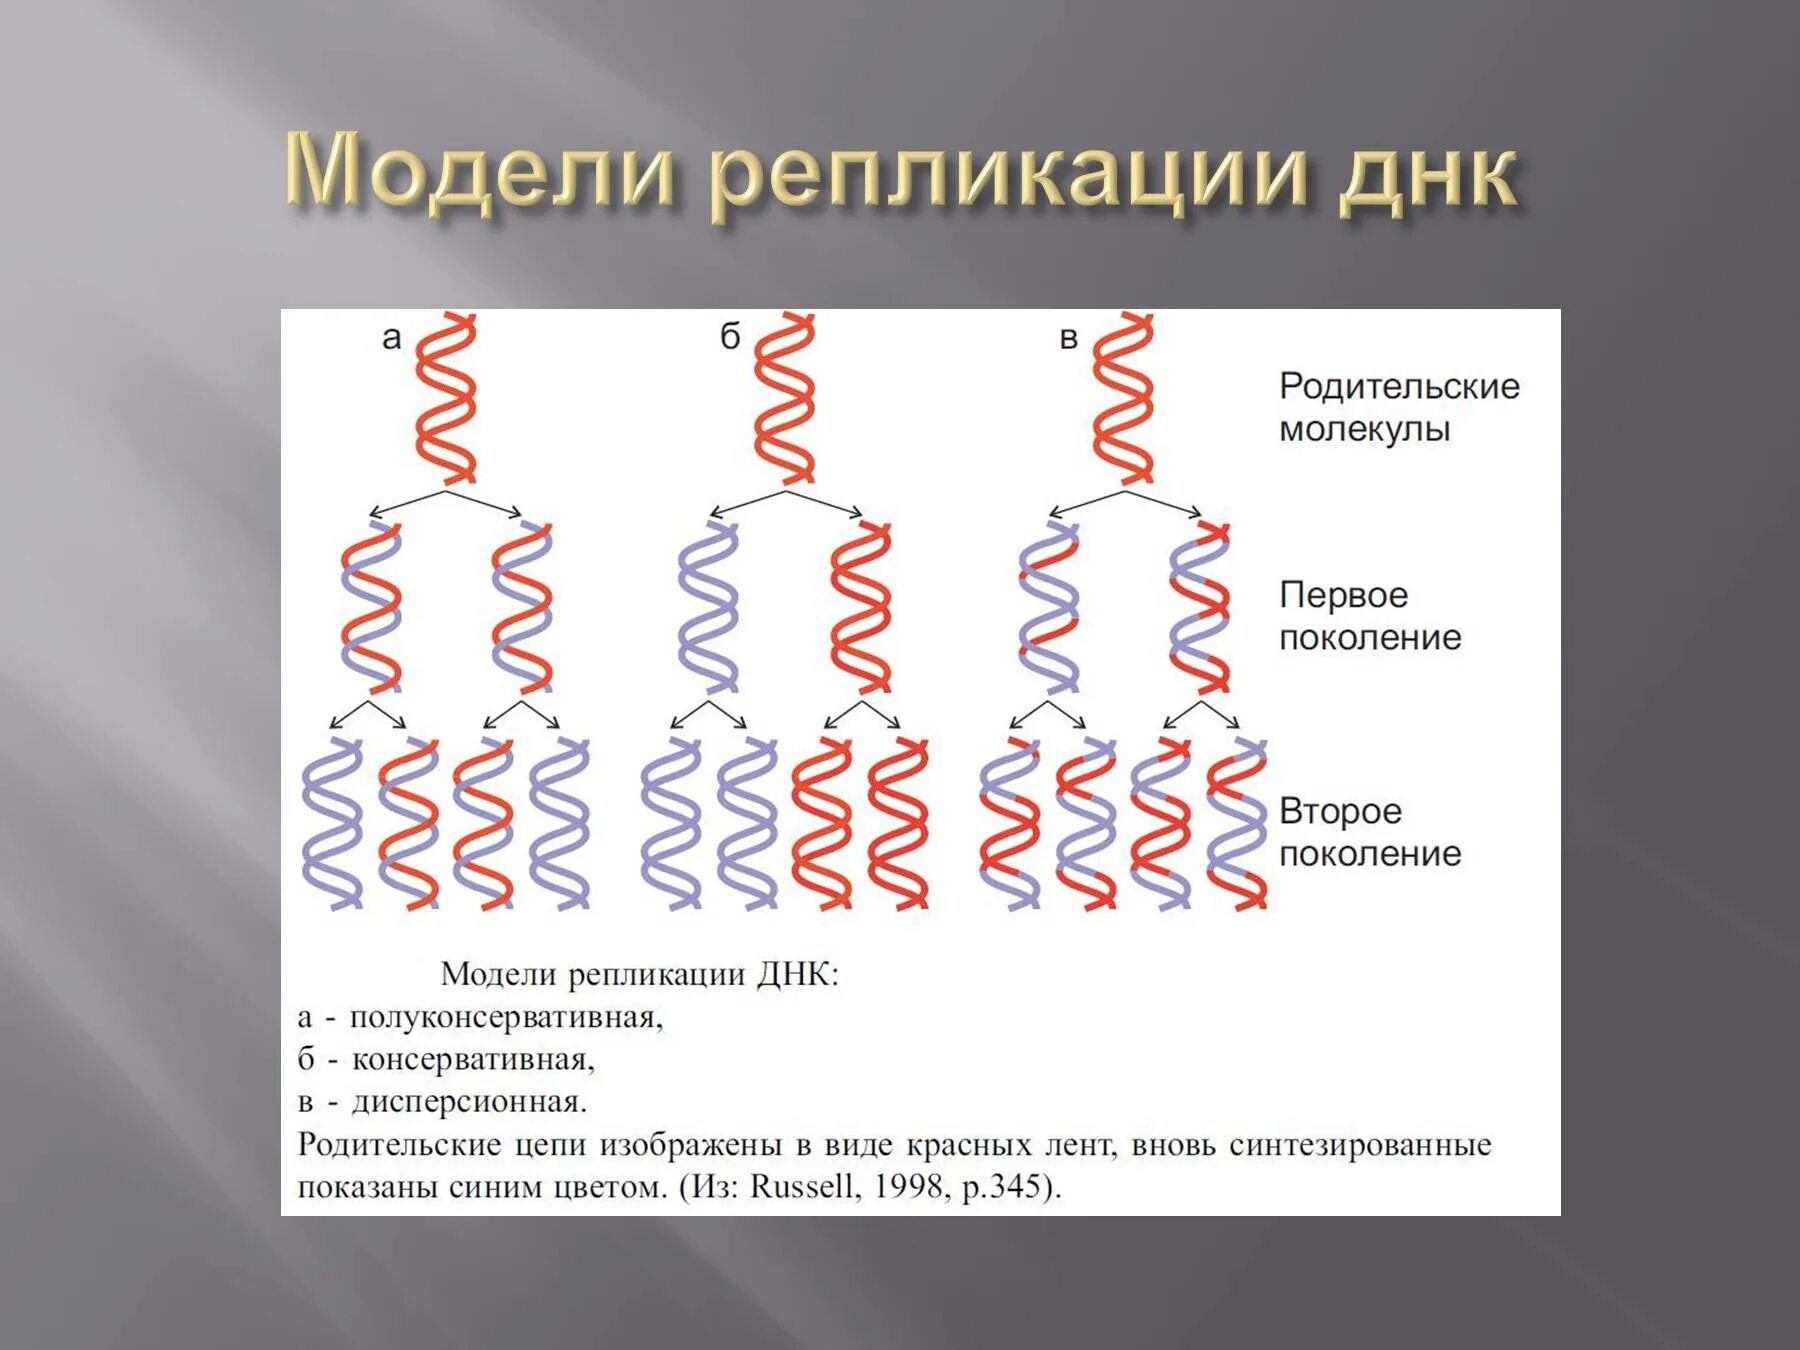 Образование дочерних днк. Последовательность этапов репликации молекулы ДНК. Дисперсионный механизм репликации ДНК. Схема репликации молекулы ДНК по биологии. Механизм репликация молекулы ДНК.